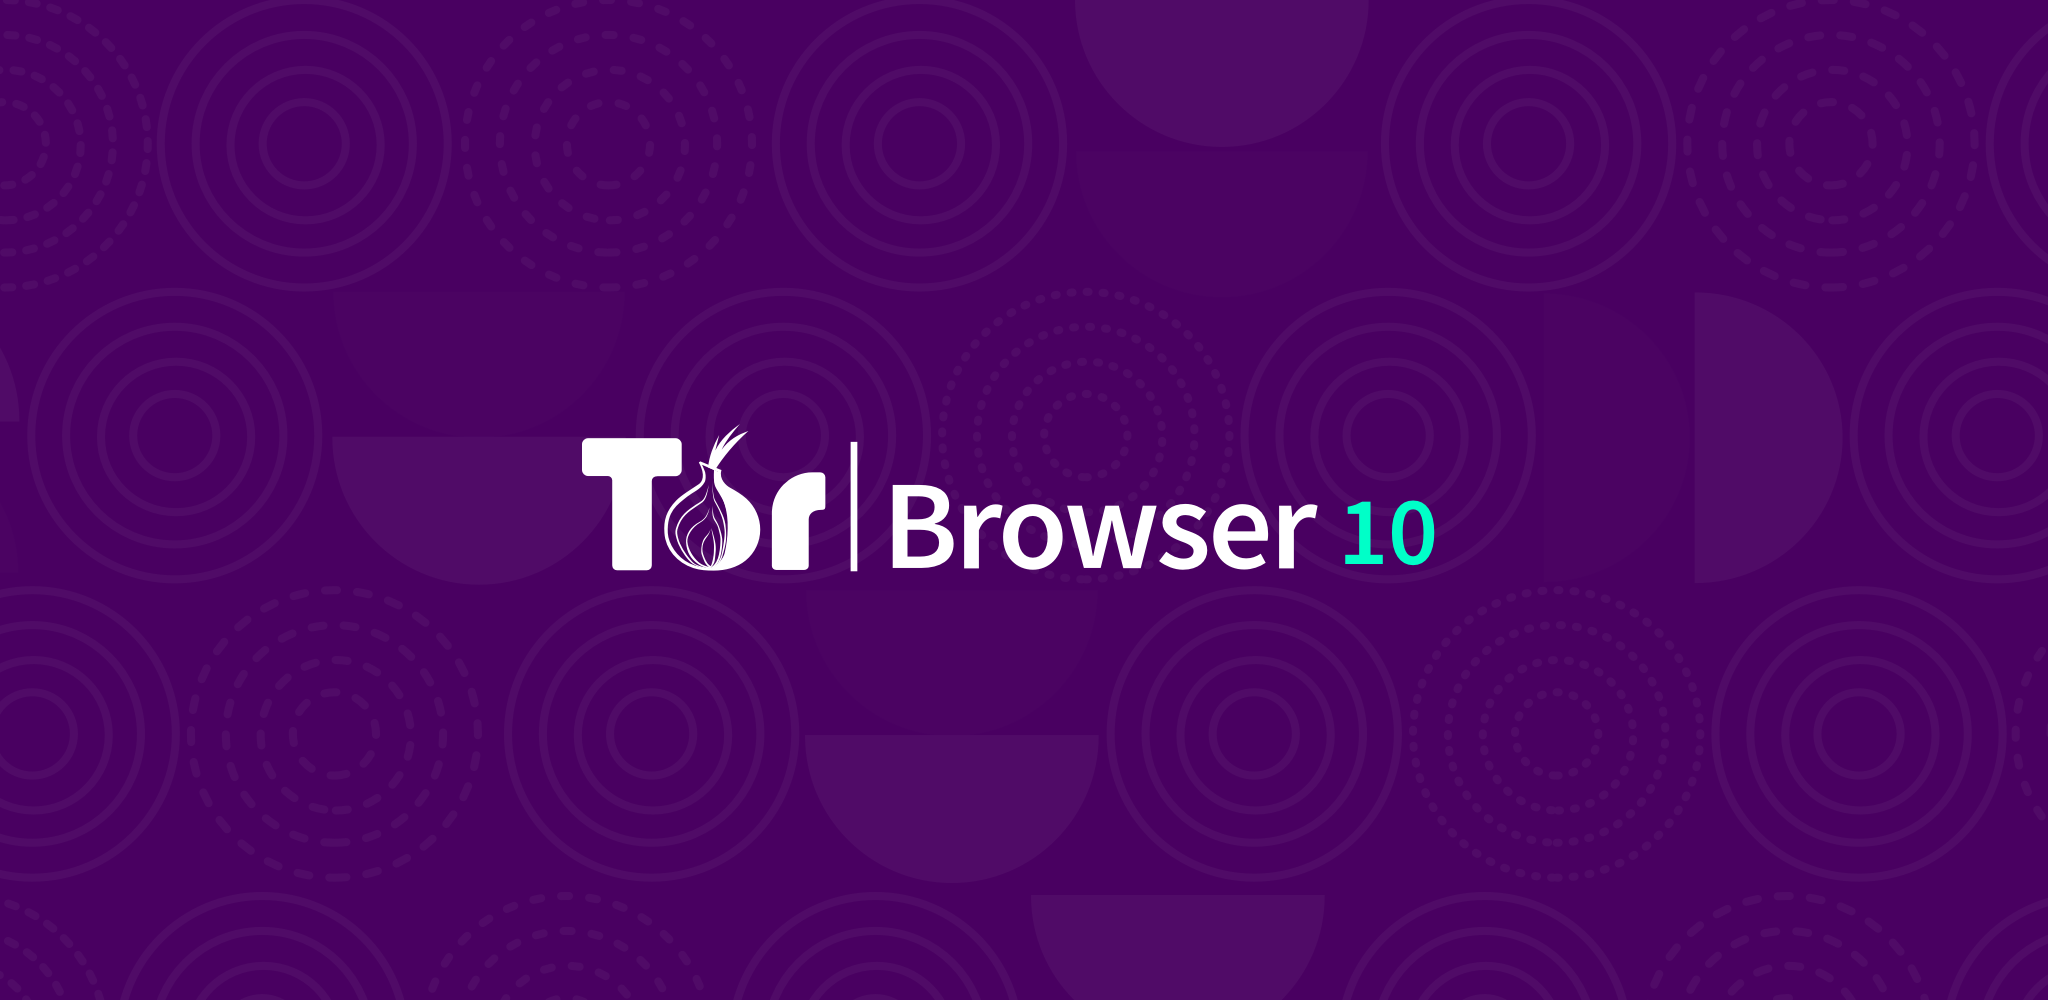 Как установить tor browser в debian gydra тор с браузером яндекс gidra